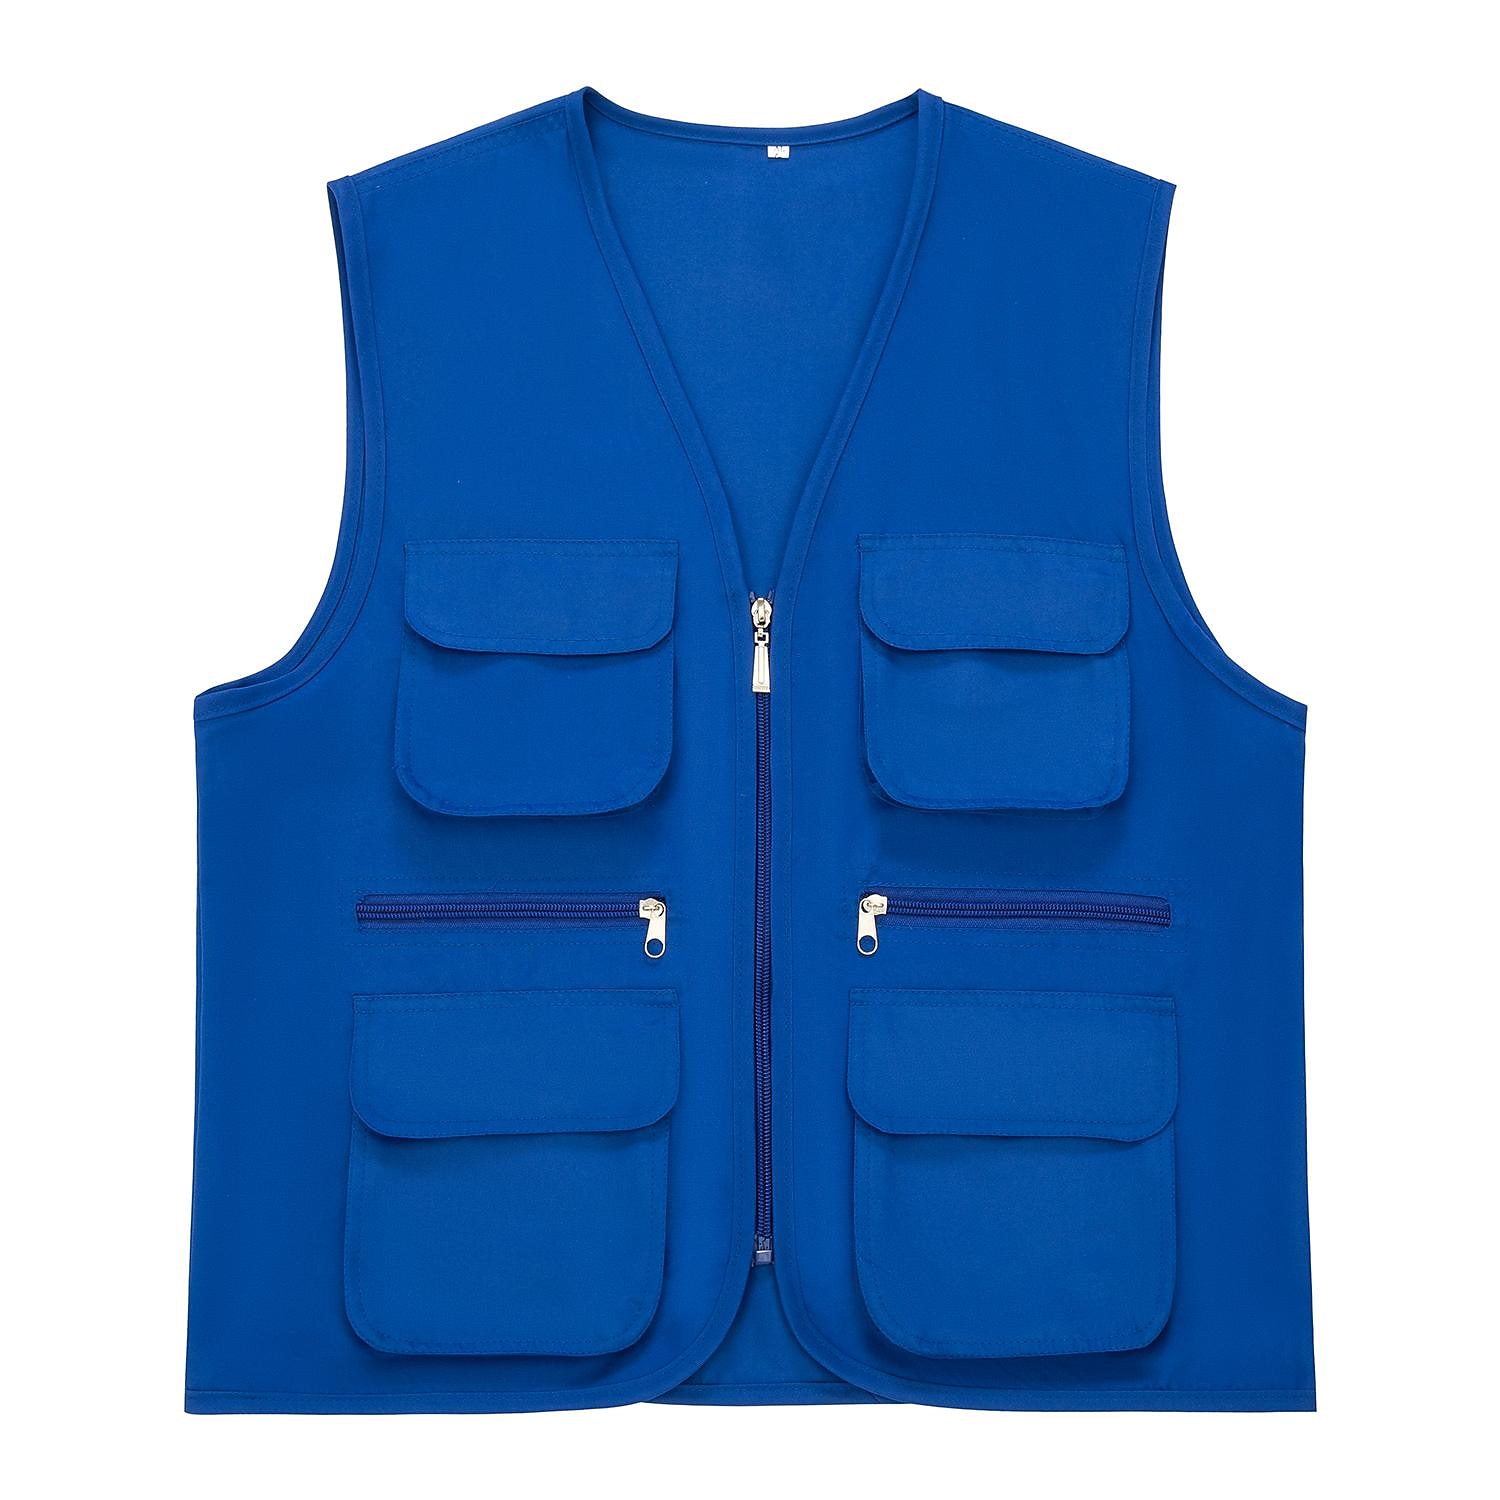 Men's Women's Fishing Vest Hiking Vest Sleeveless Jacket Coat Top